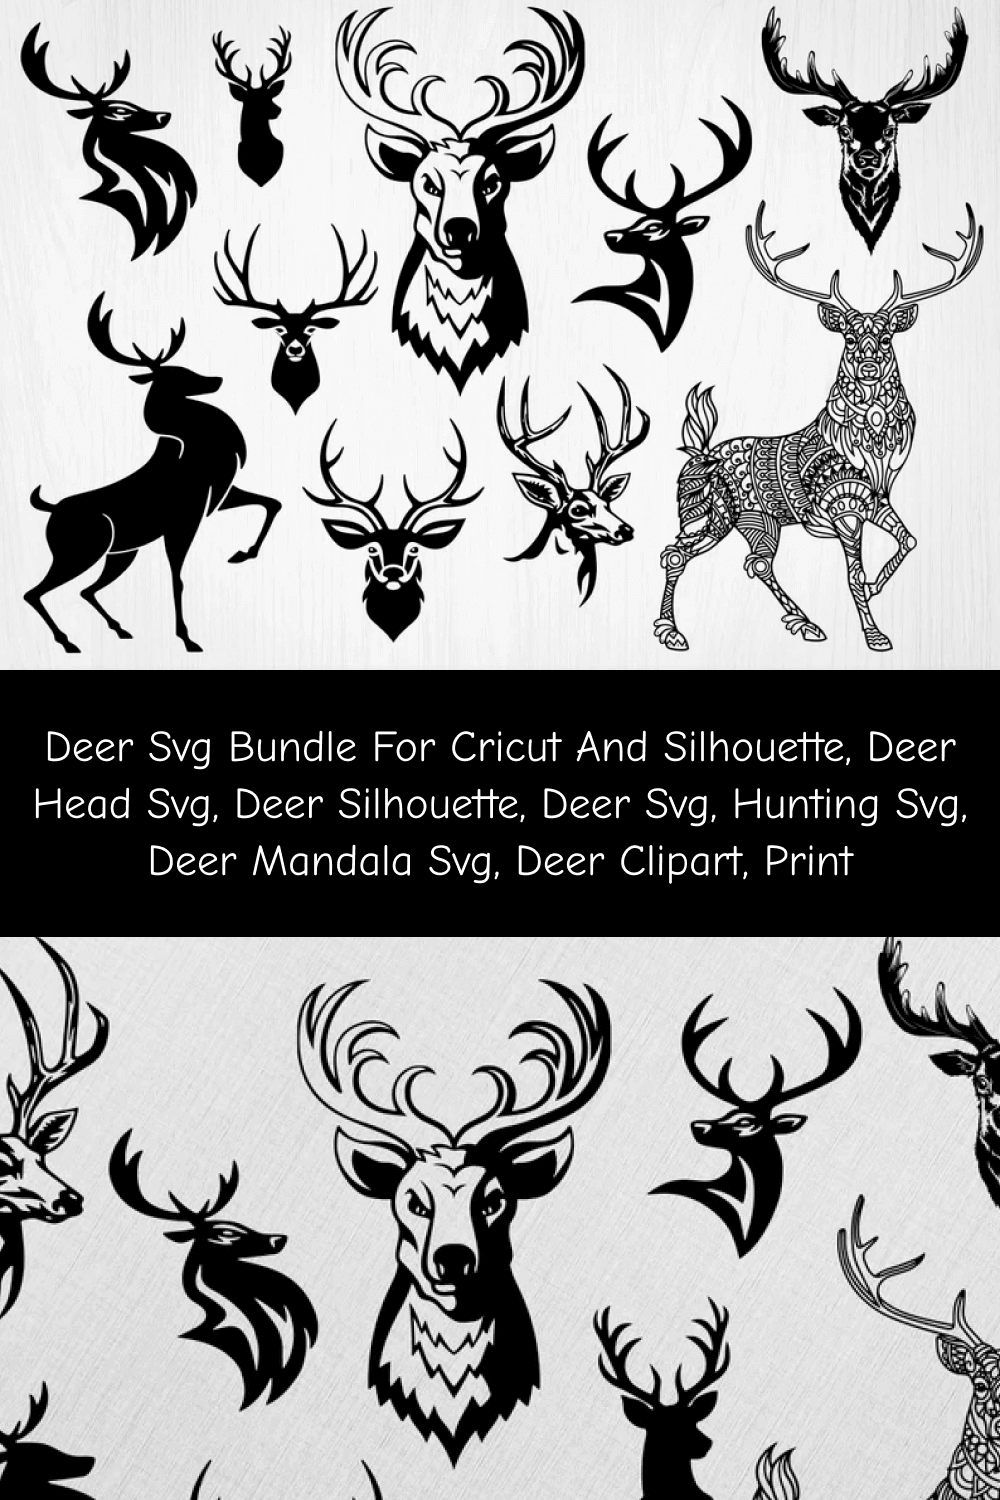 Deer Mandala SVG.